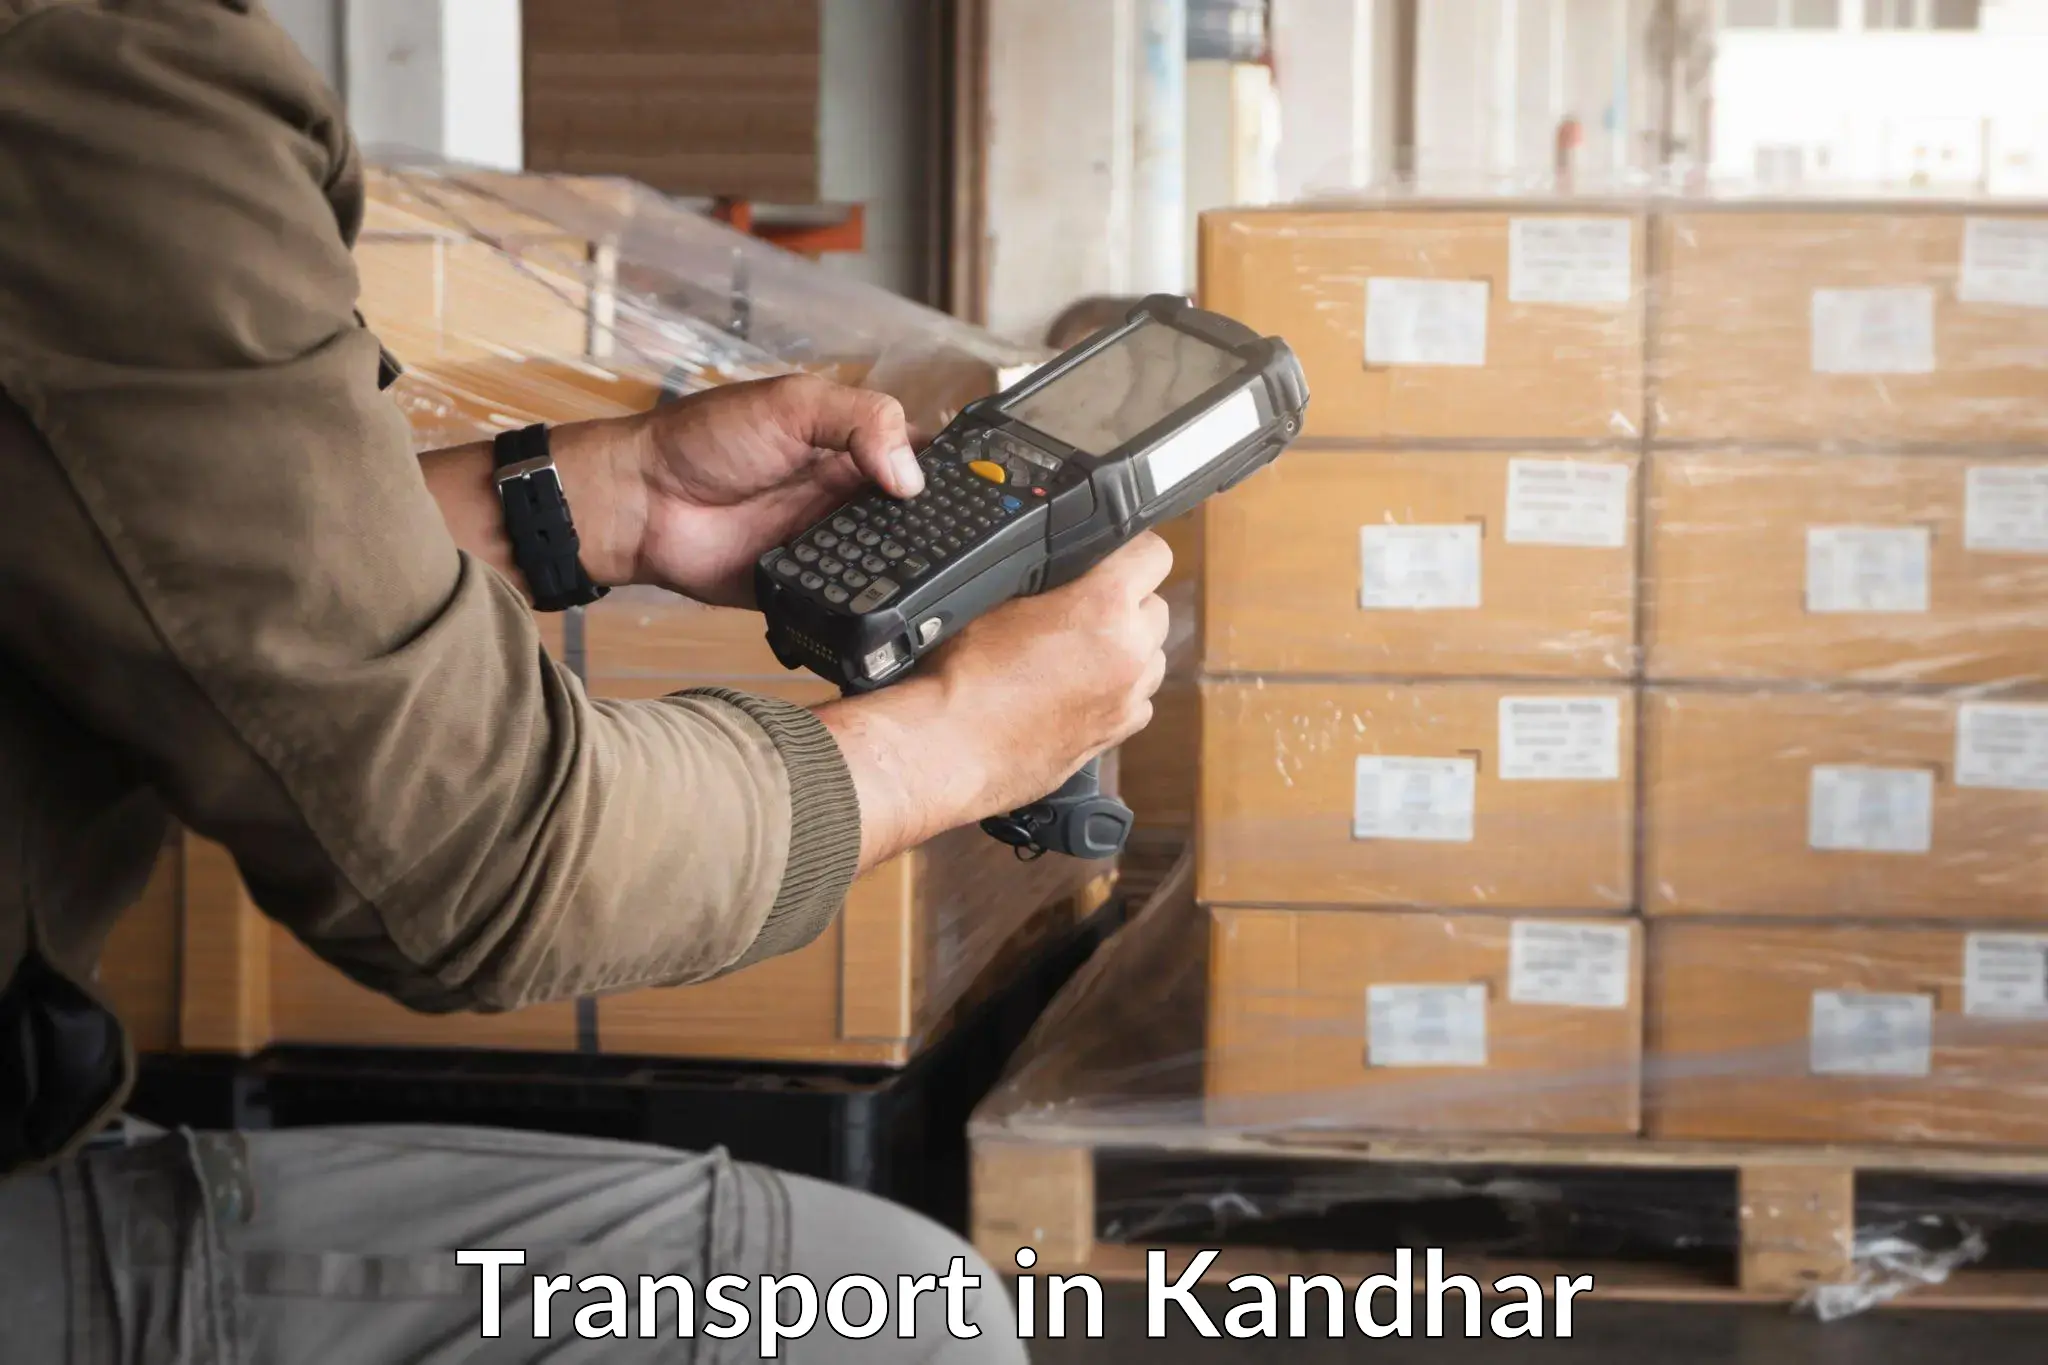 Transport services in Kandhar